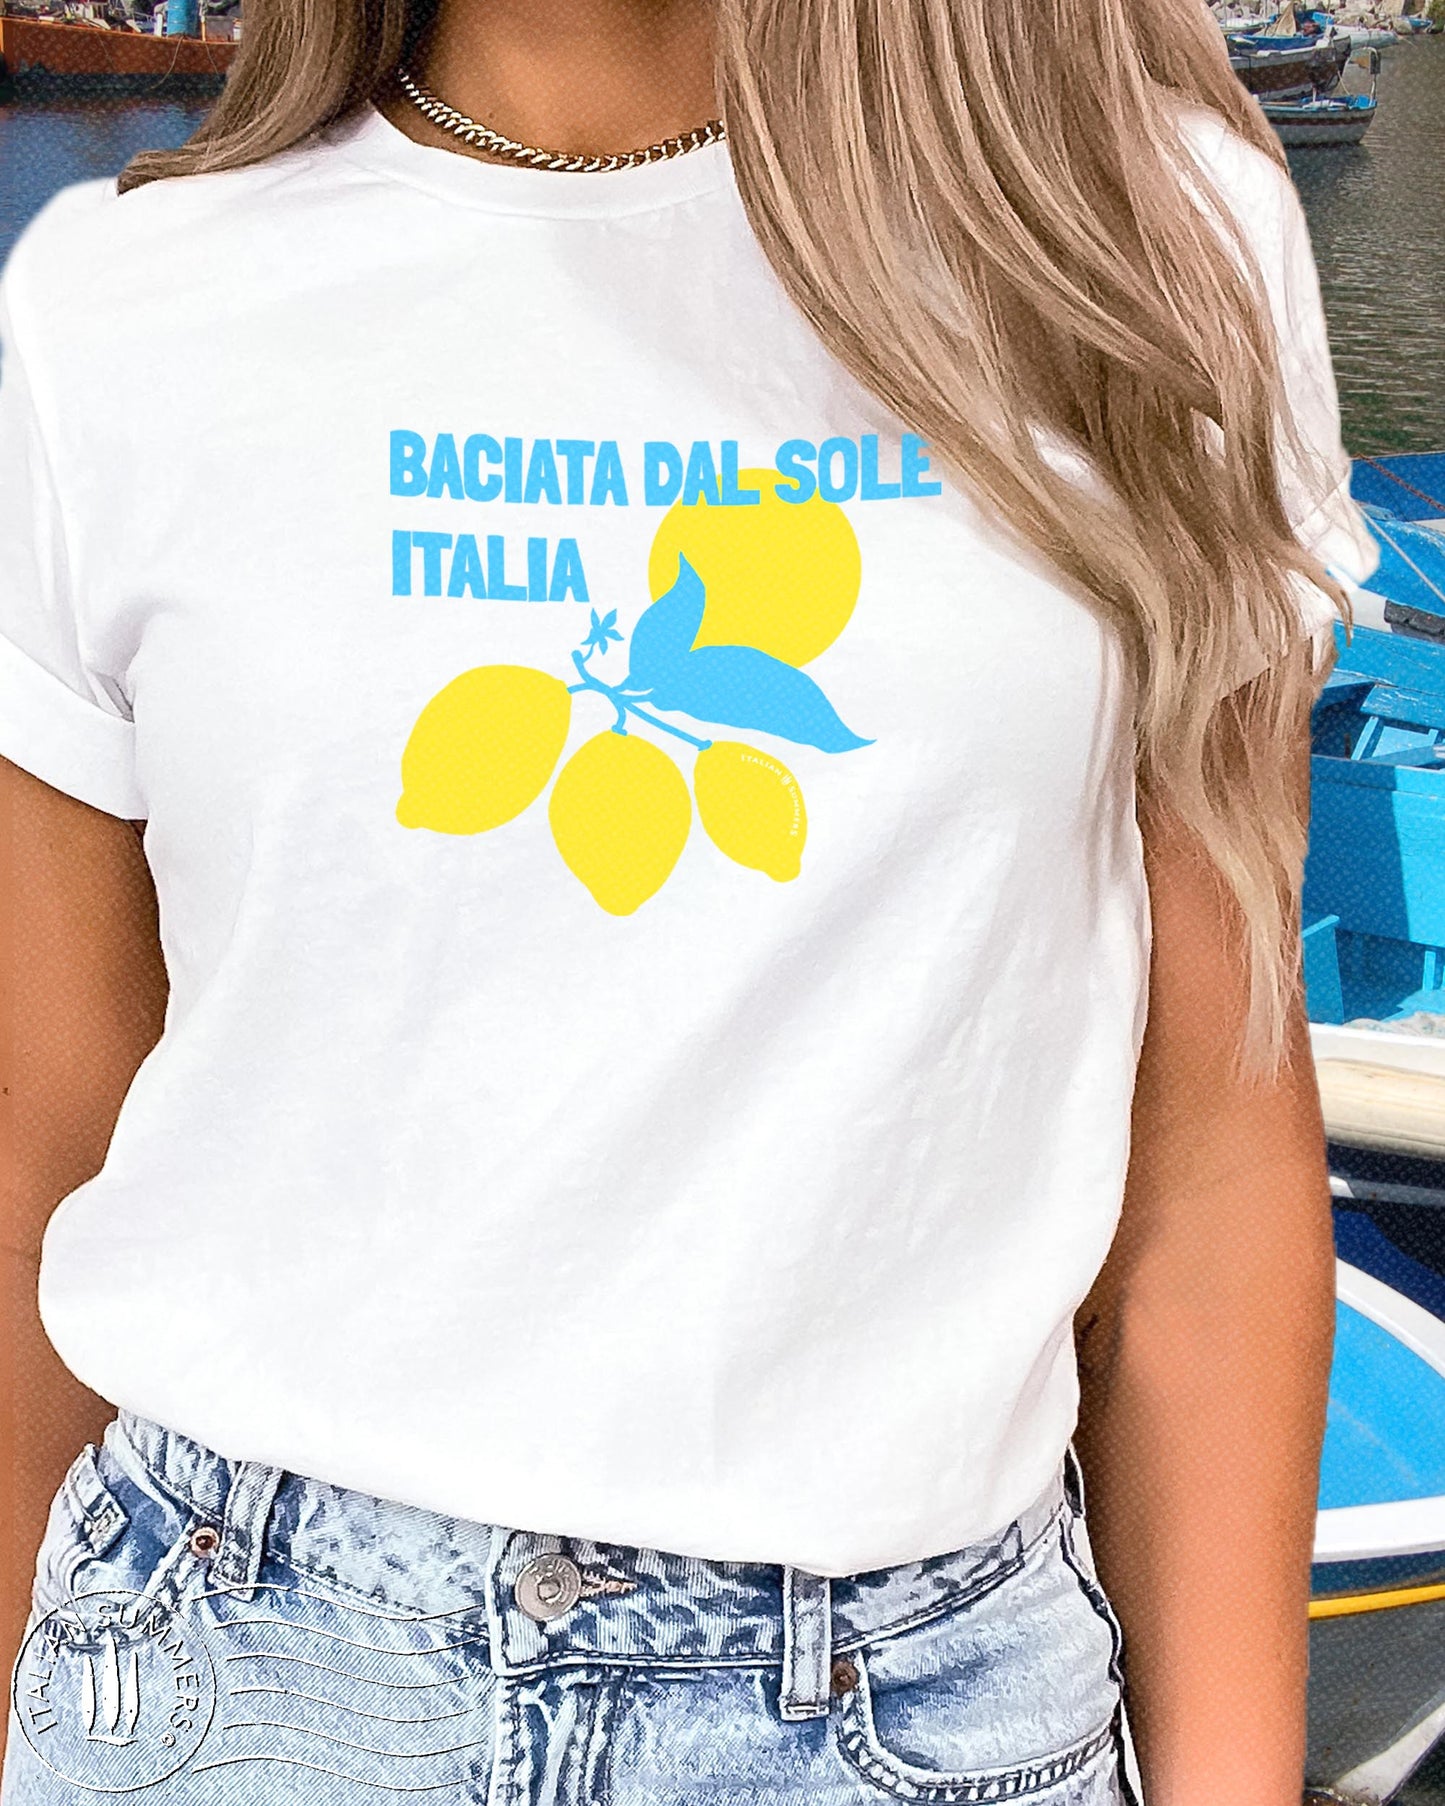 T-Shirt BACIATA DAL SOLE Italia 'kissed by the Sun'